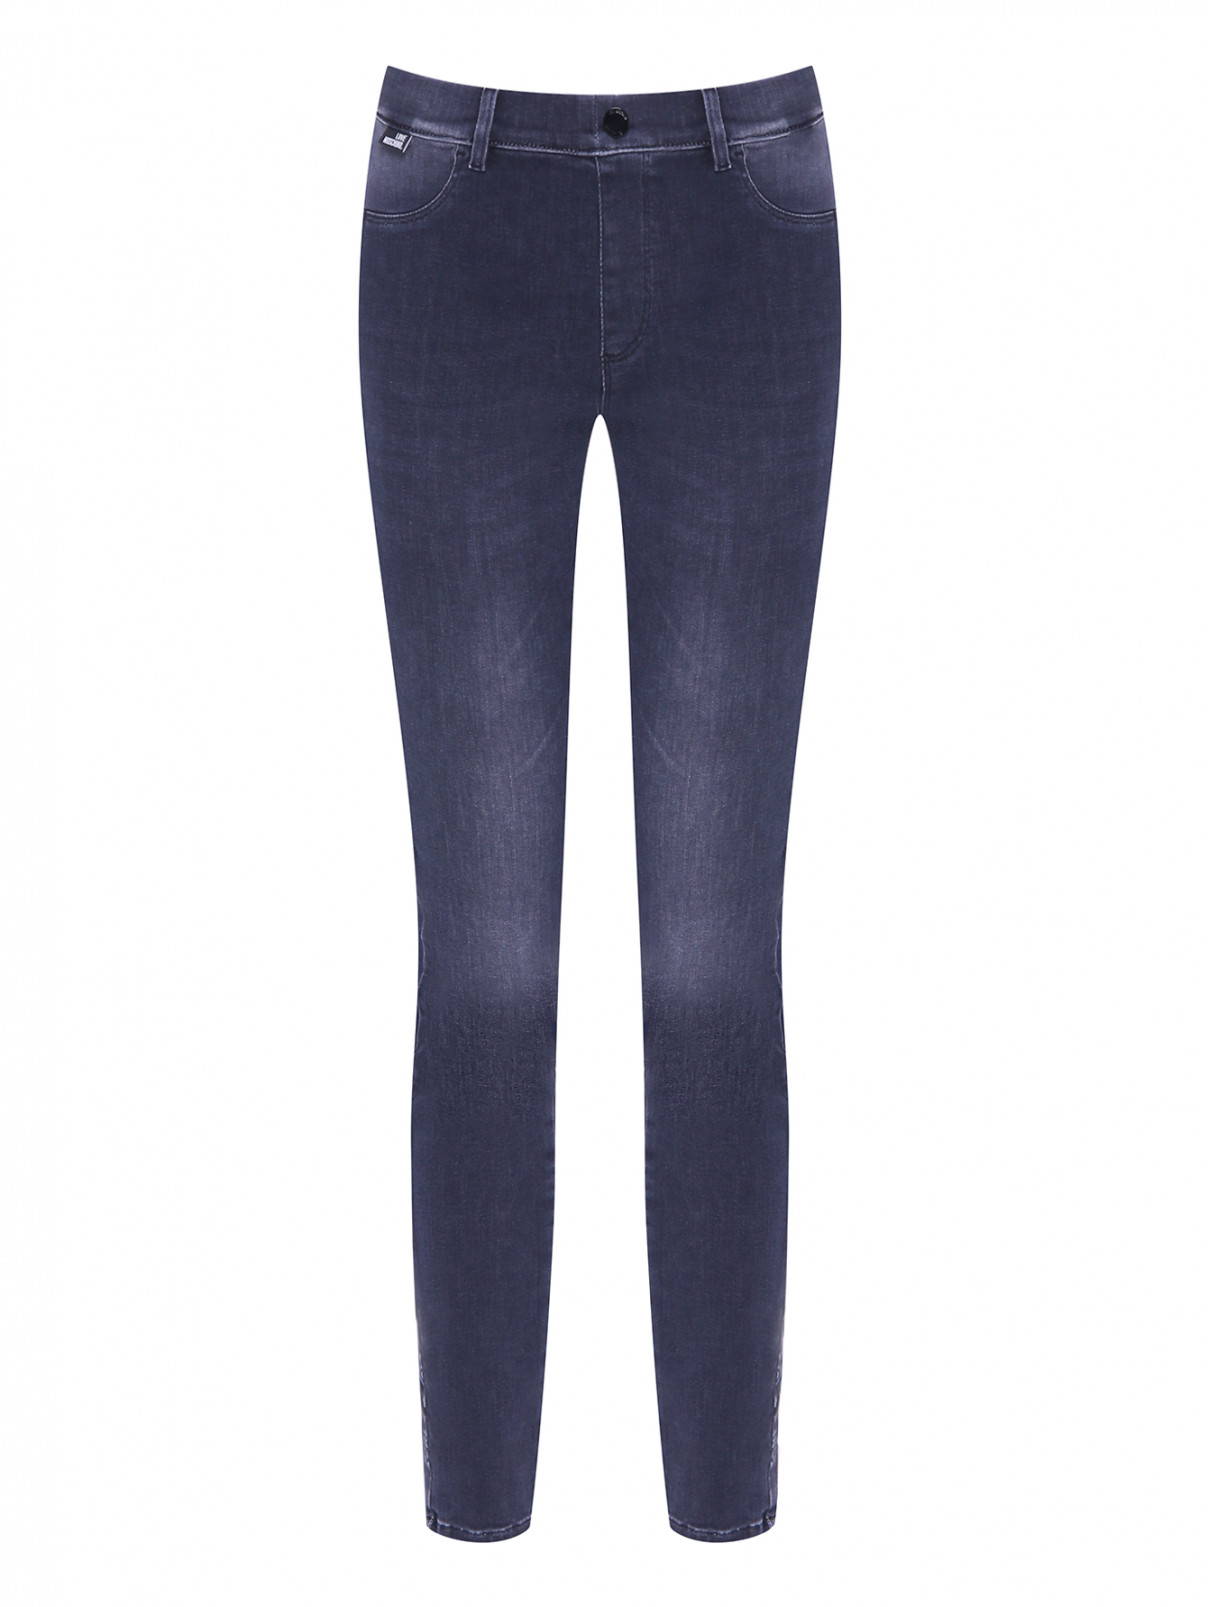 Зауженные джинсы с вышивкой Love Moschino  –  Общий вид  – Цвет:  Серый